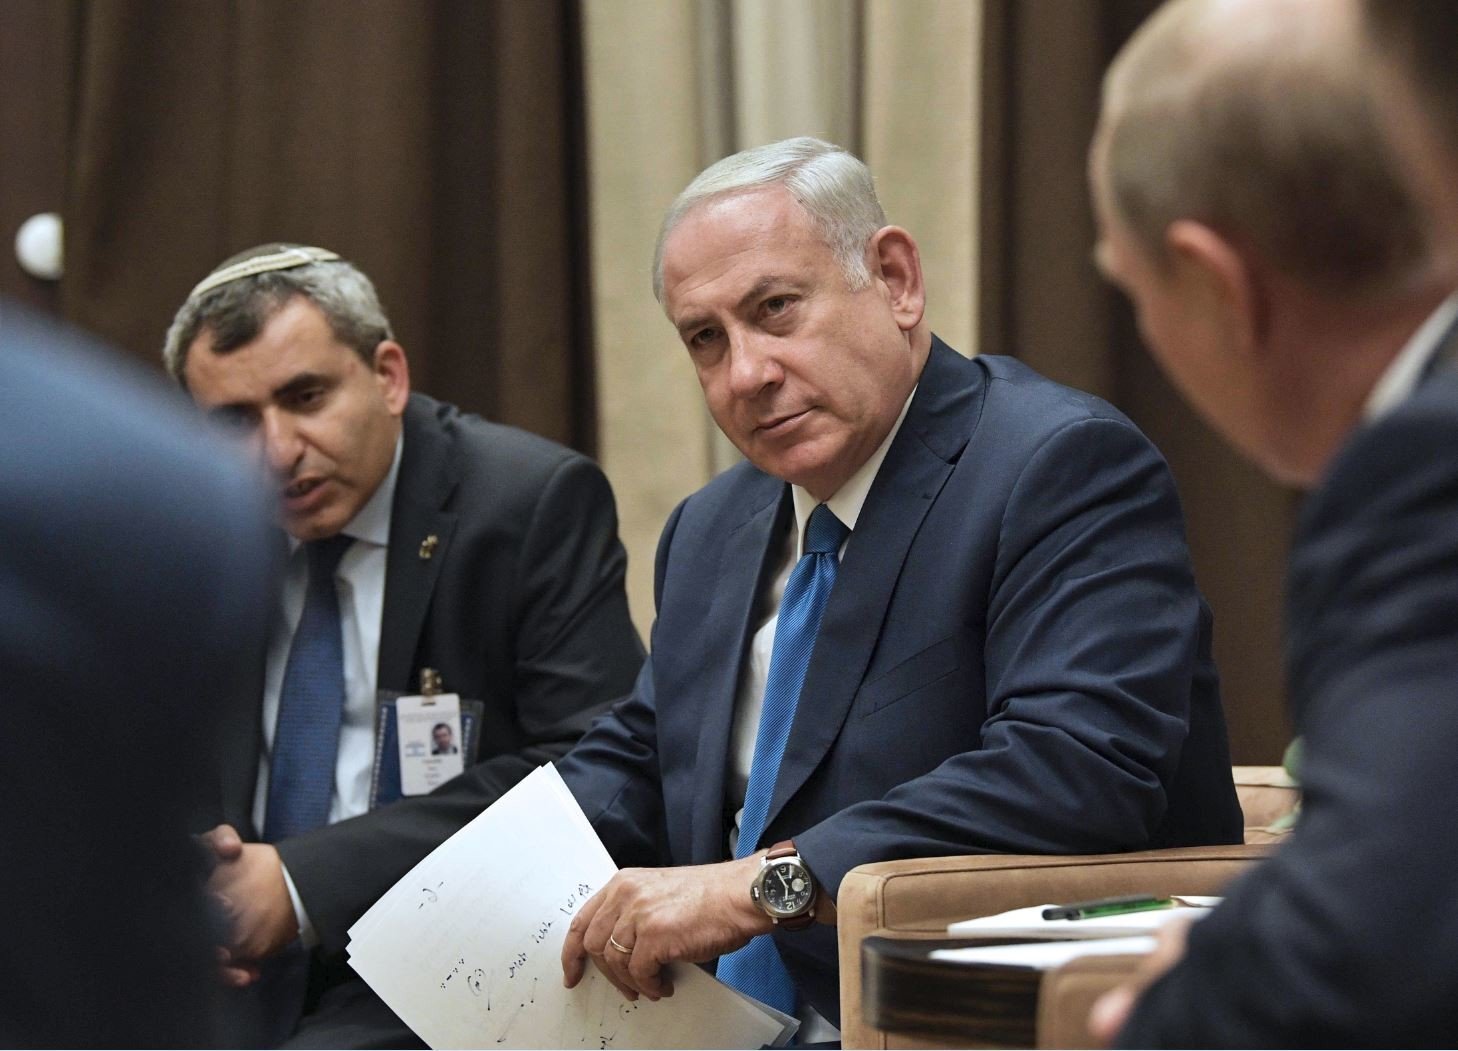 نتنياهو: لقائي مع بوتين خدم مصالح إسرائيل